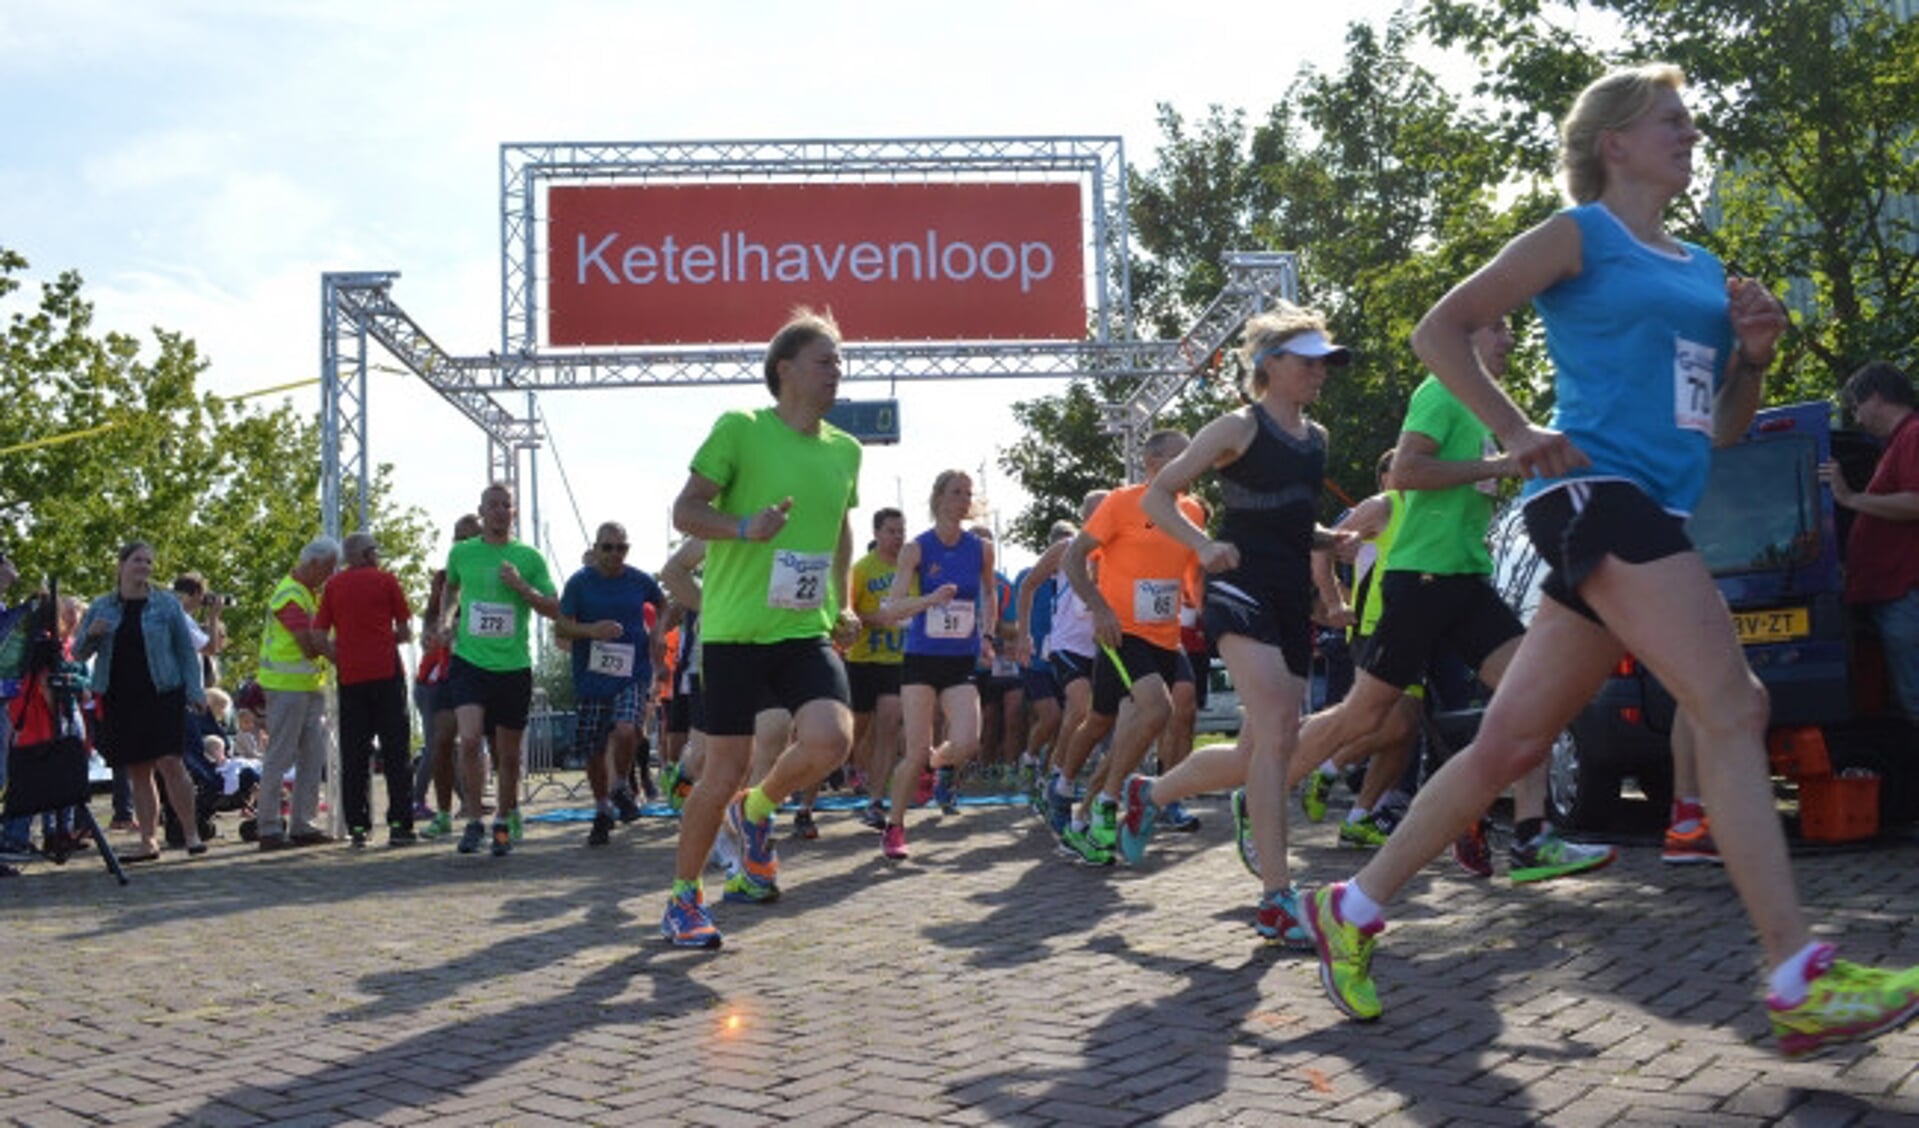  Start van de 'vierde Driedorpenloop' in Ketelhaven.